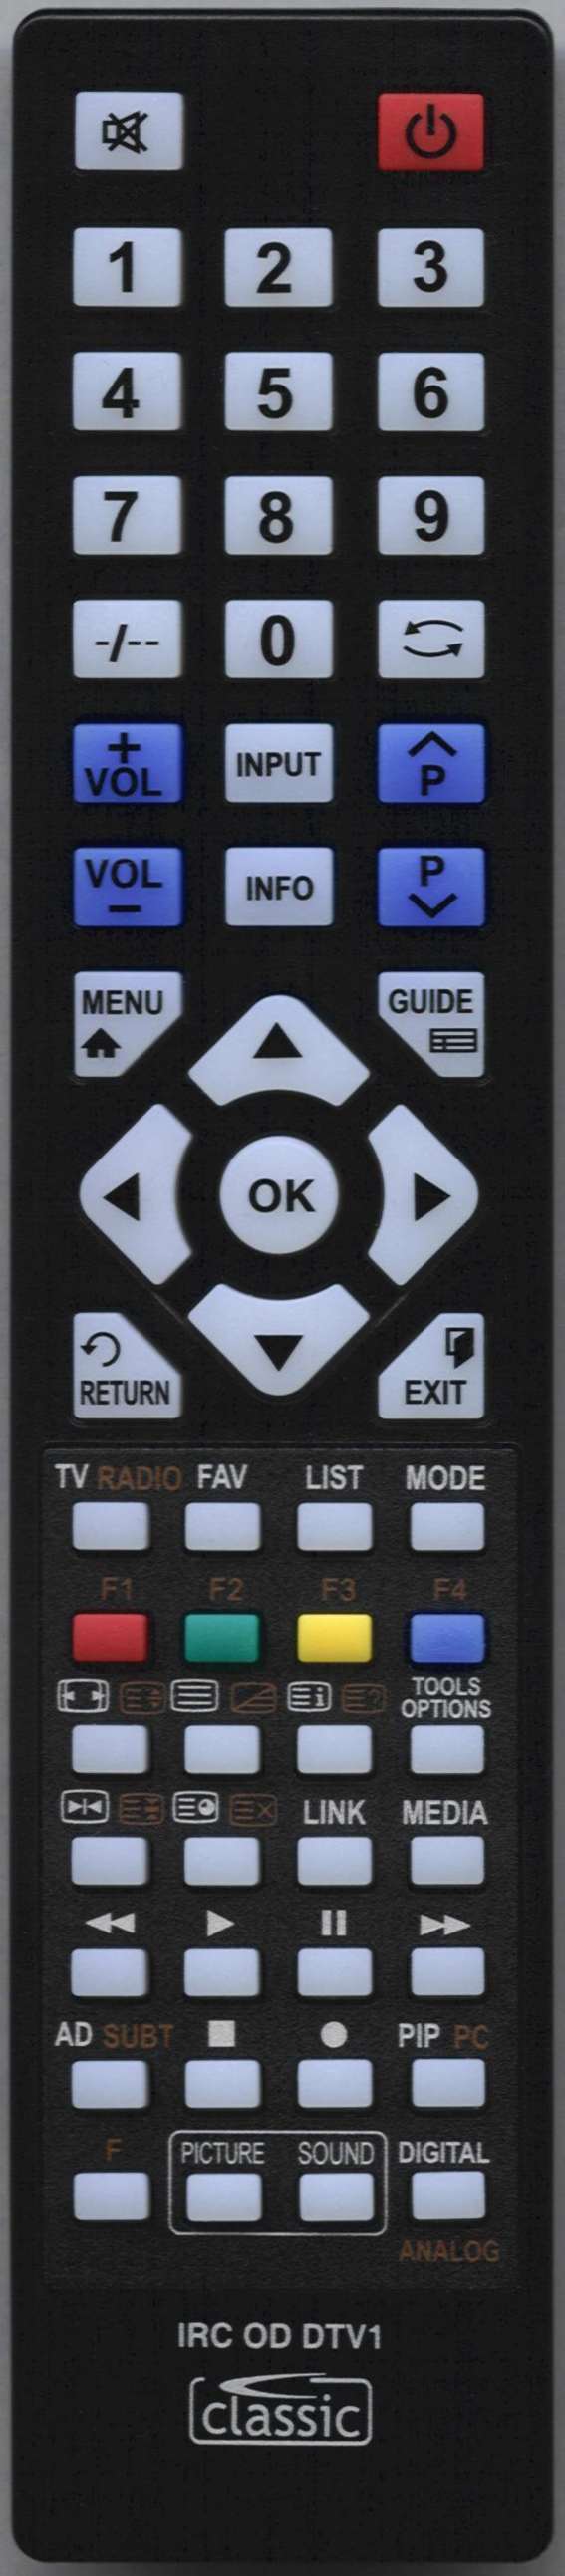 UMC Q19L04E01G Remote Control